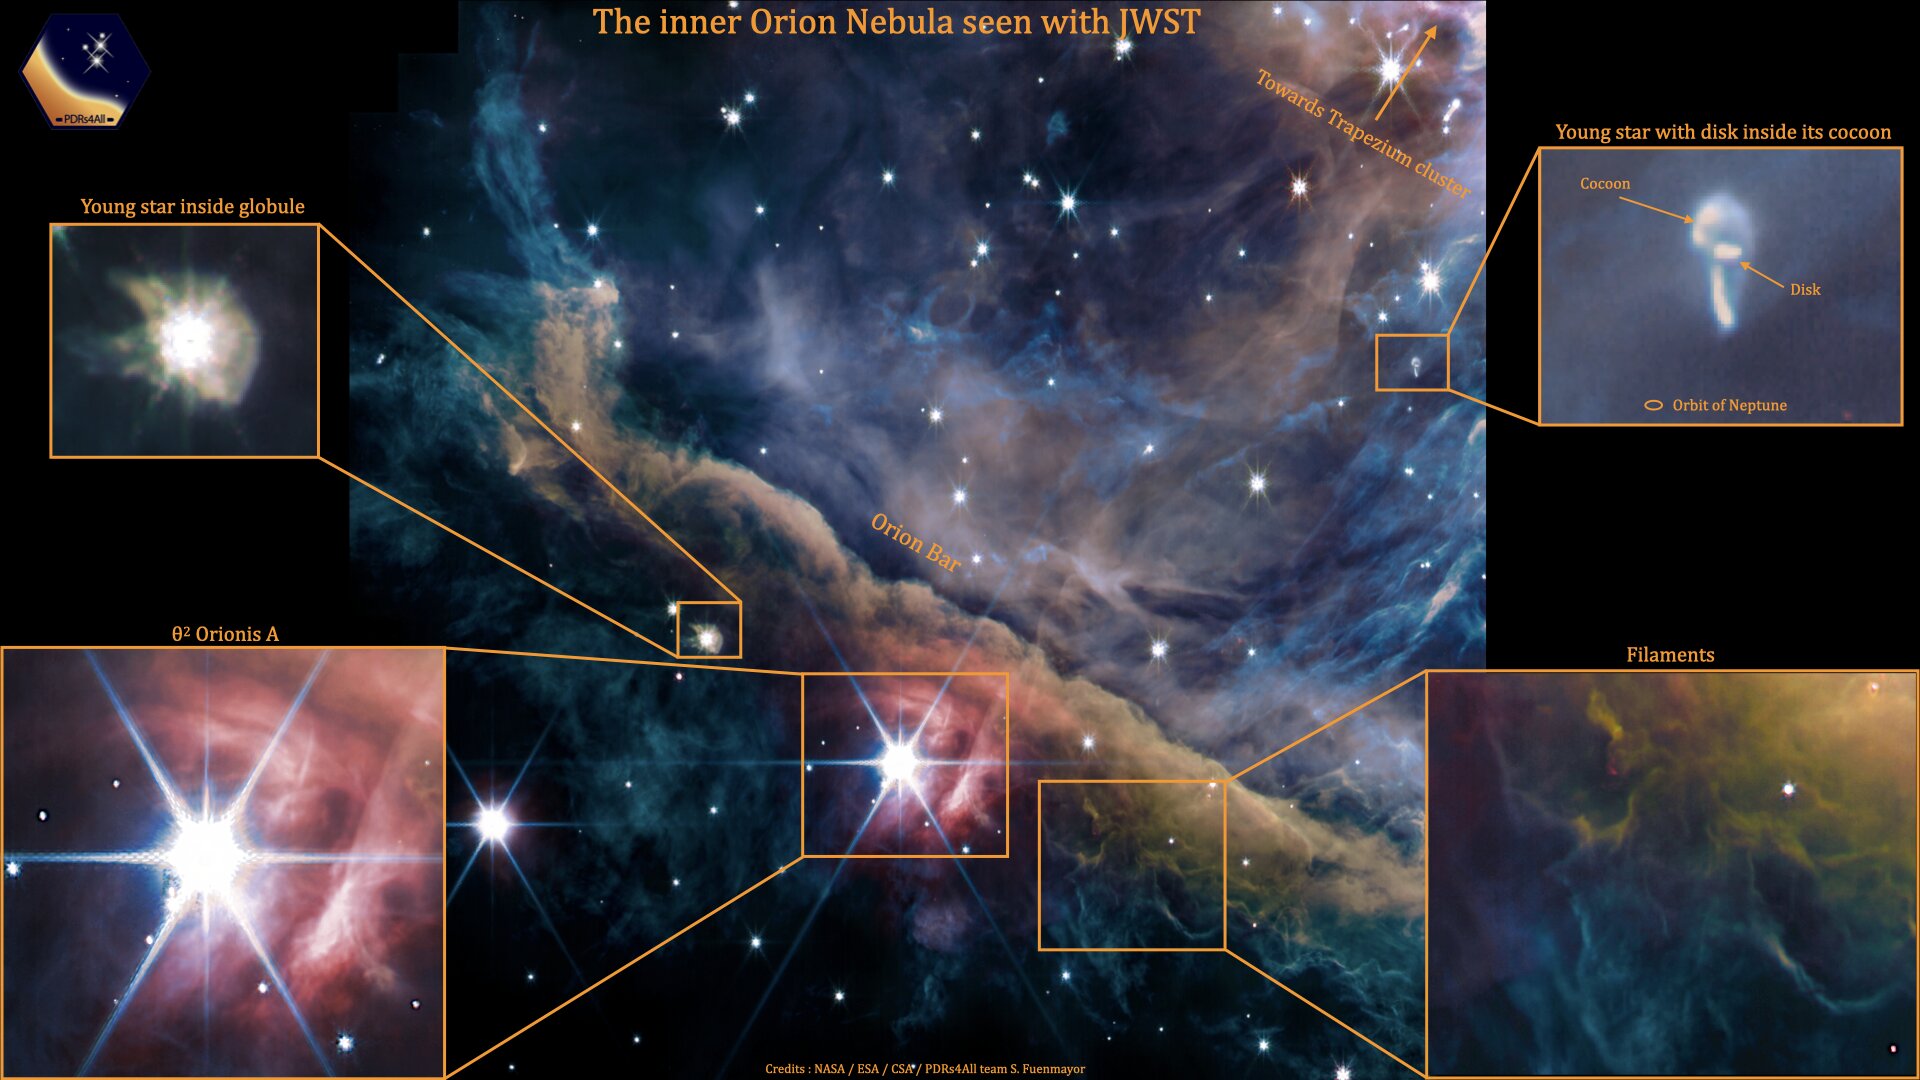 Eine neue Webbeobachtung von Orion zeigt ein zusammengesetztes Bild mit mehreren Filtern, das Emissionen von ionisiertem Gas, Kohlenwasserstoffen, molekularem Gas, Staub und gestreutem Sternenlicht (NASA) darstellt.